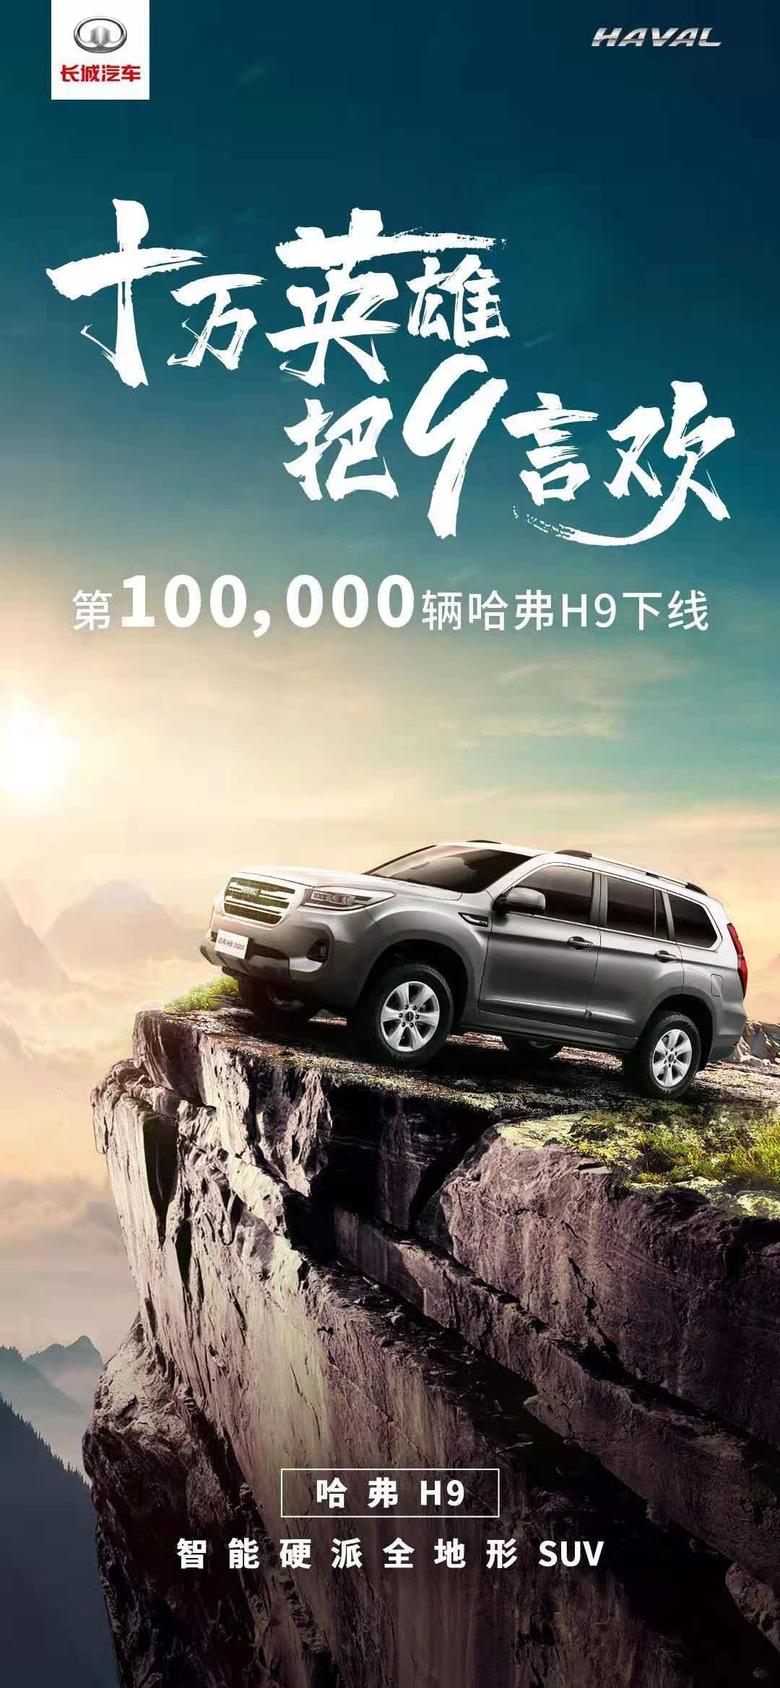 哈弗H9成为中国品牌首个突破10万辆的高端中大型硬派SUV